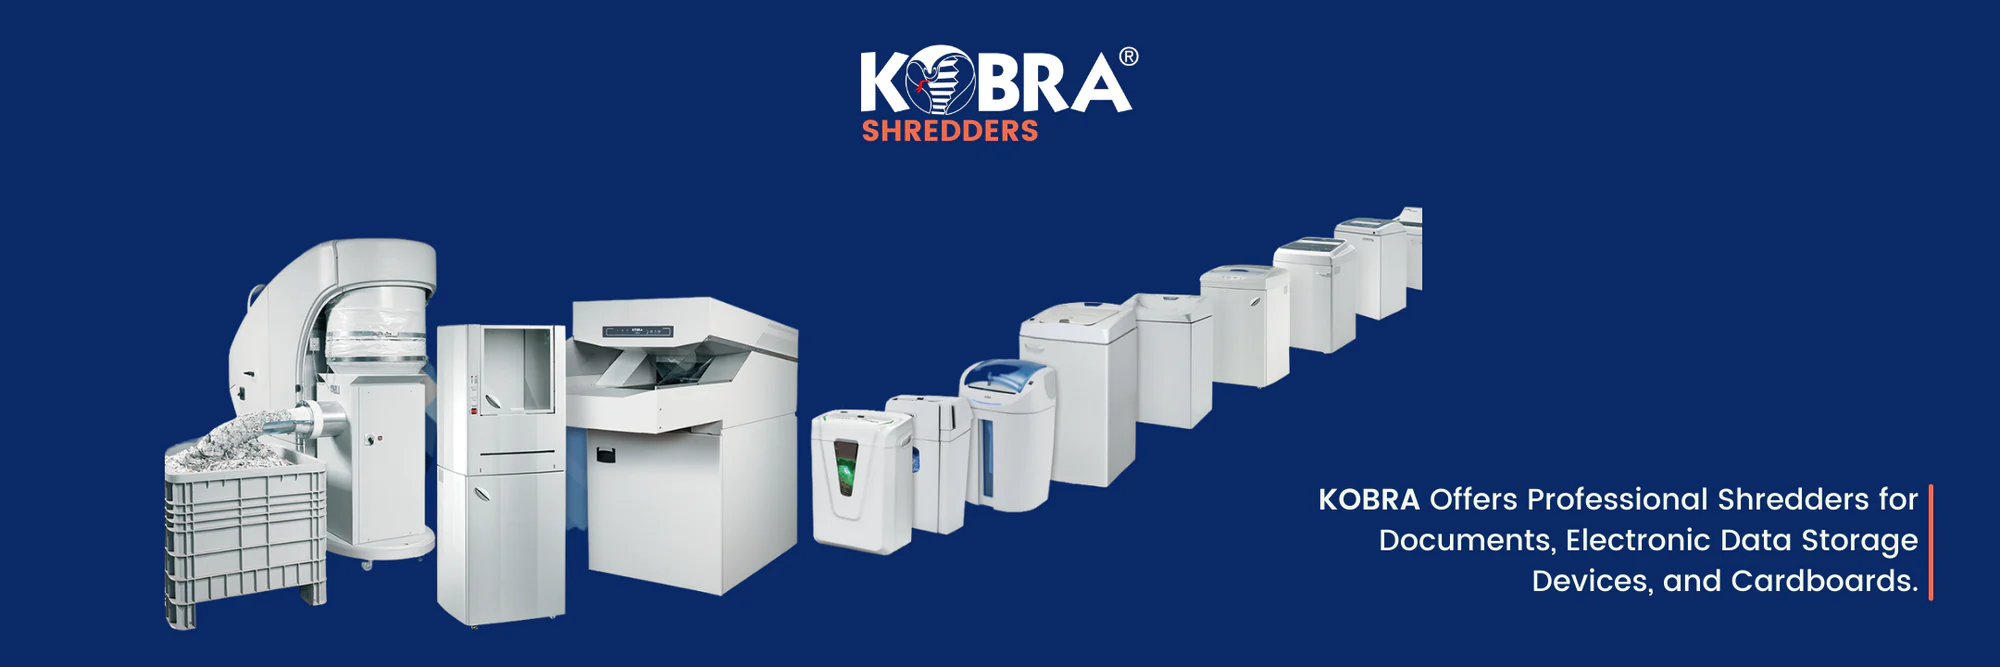 Kobra-Shredders-USA-Product-Line-1_82175164-a5b6-425e-8c65-bd9571fab487